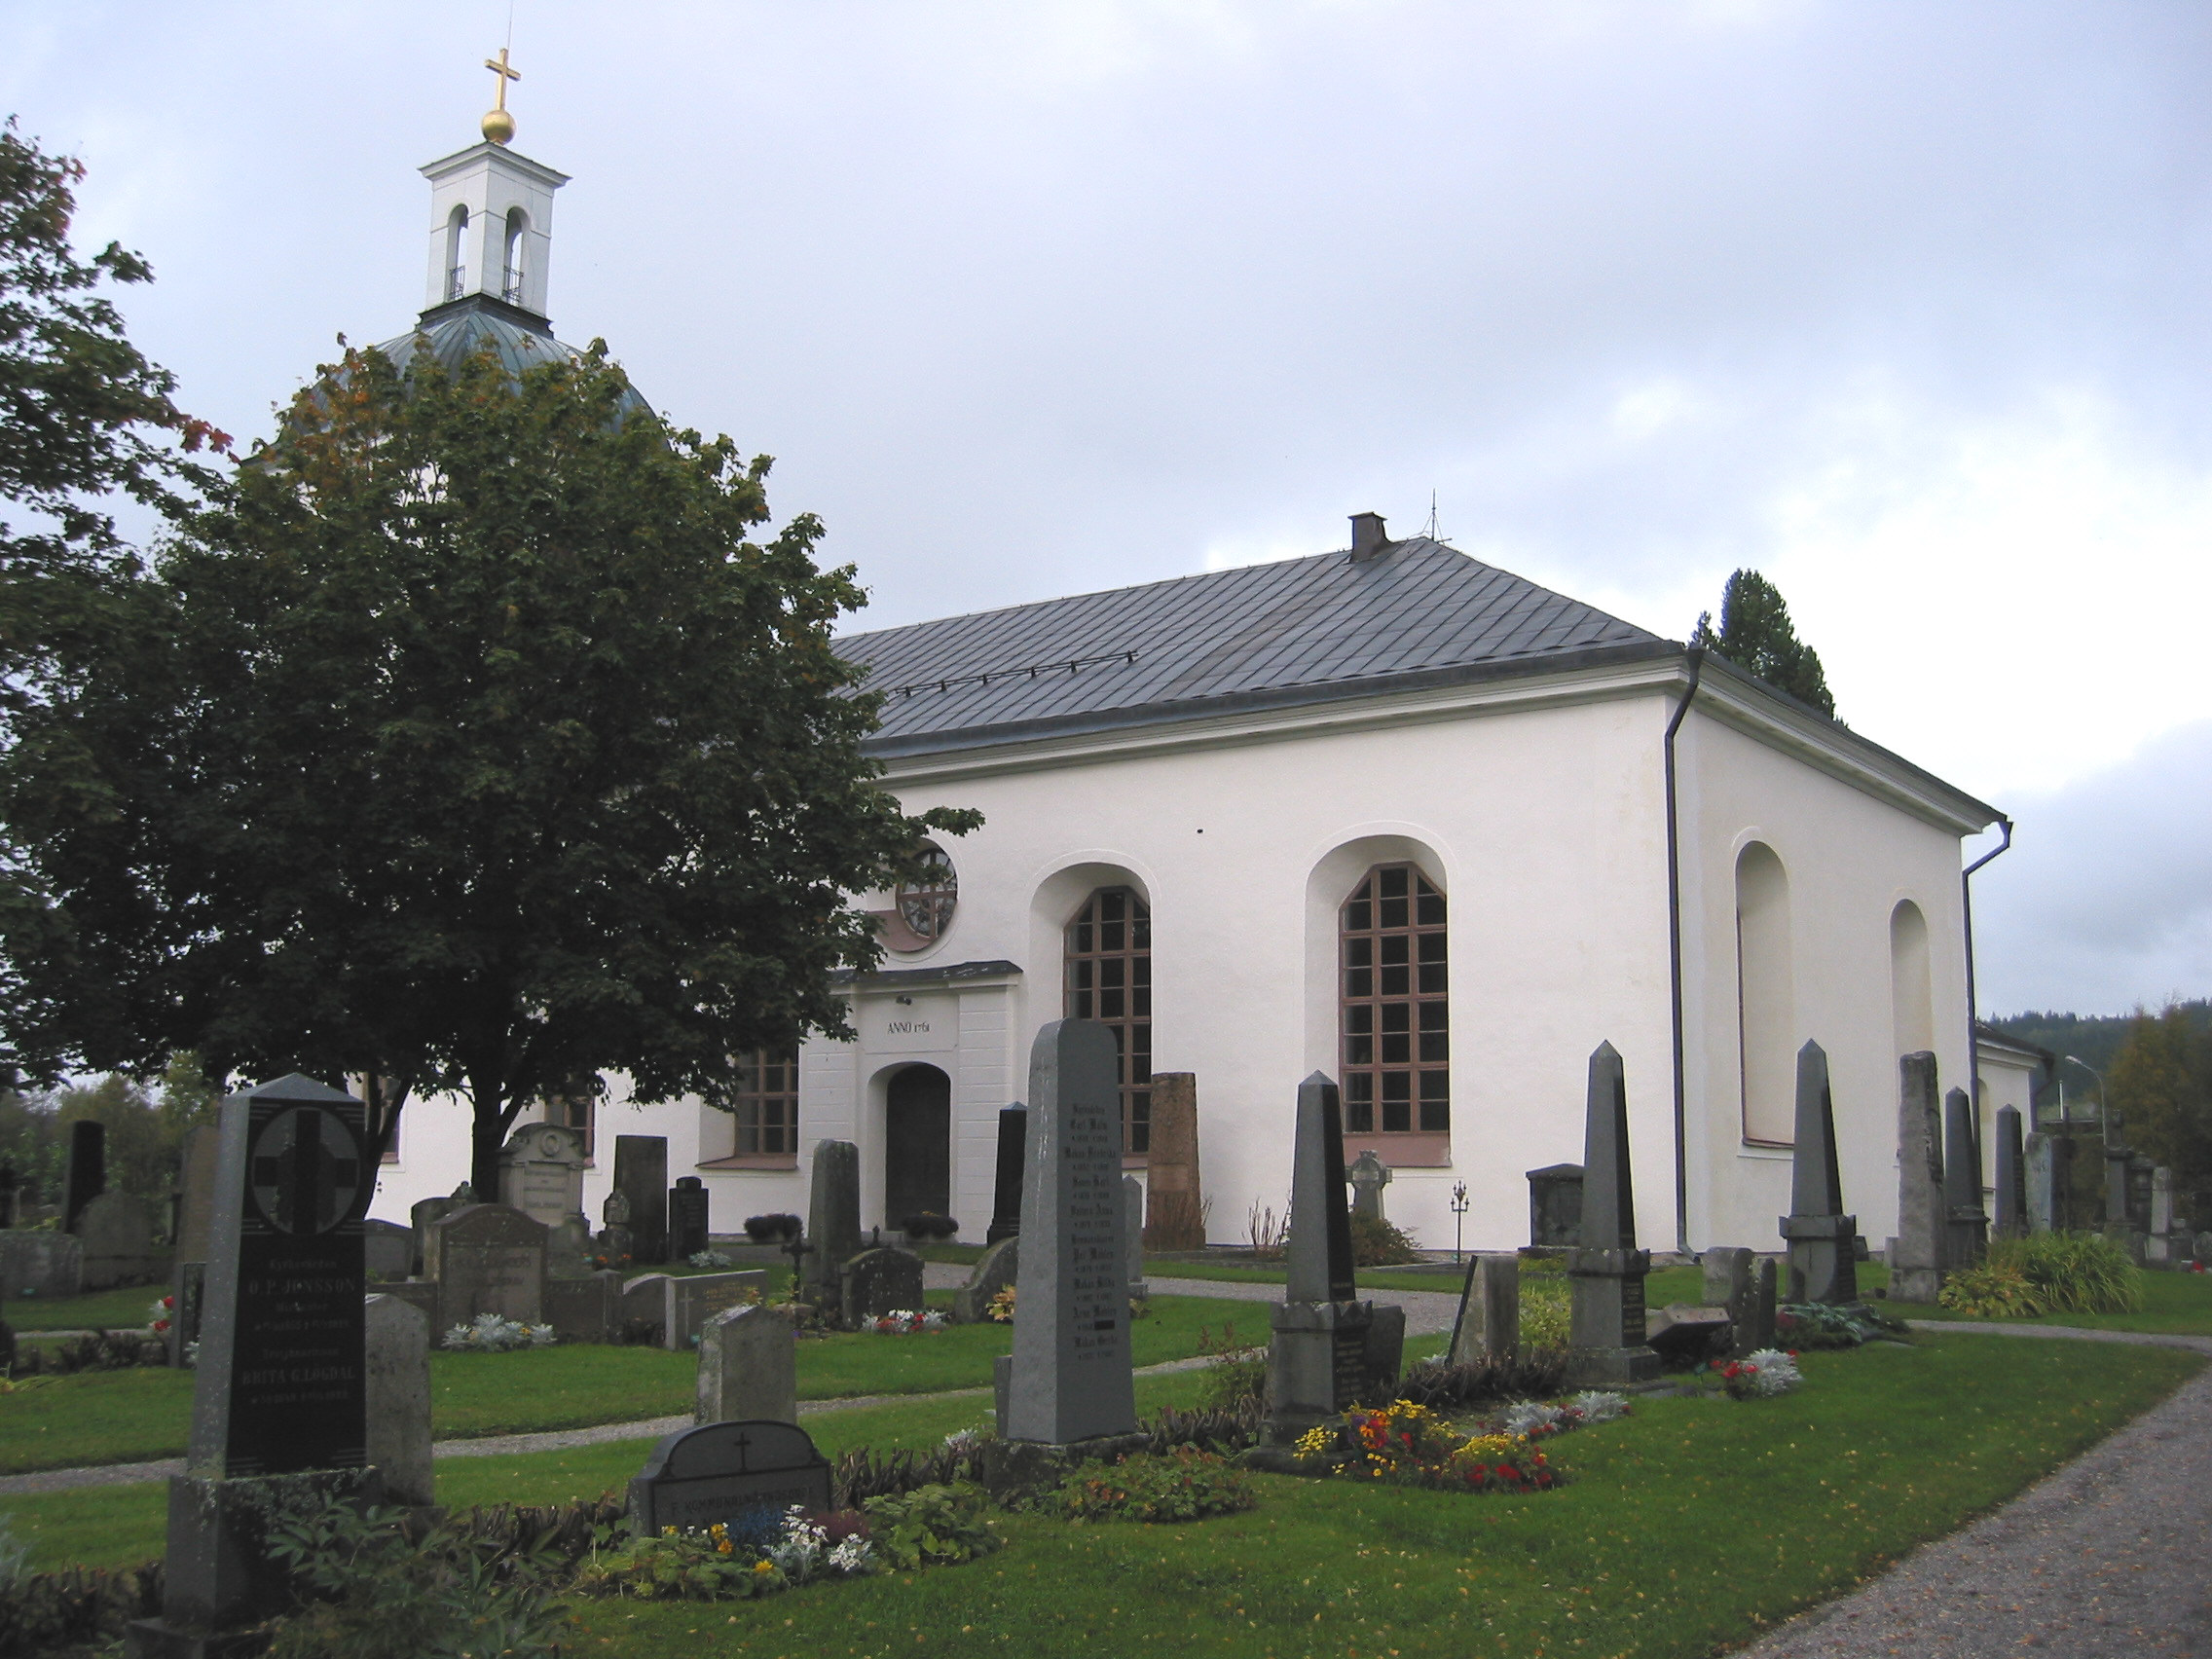 Indals kyrka med omgivande kyrkogård, vy från sydöst. 